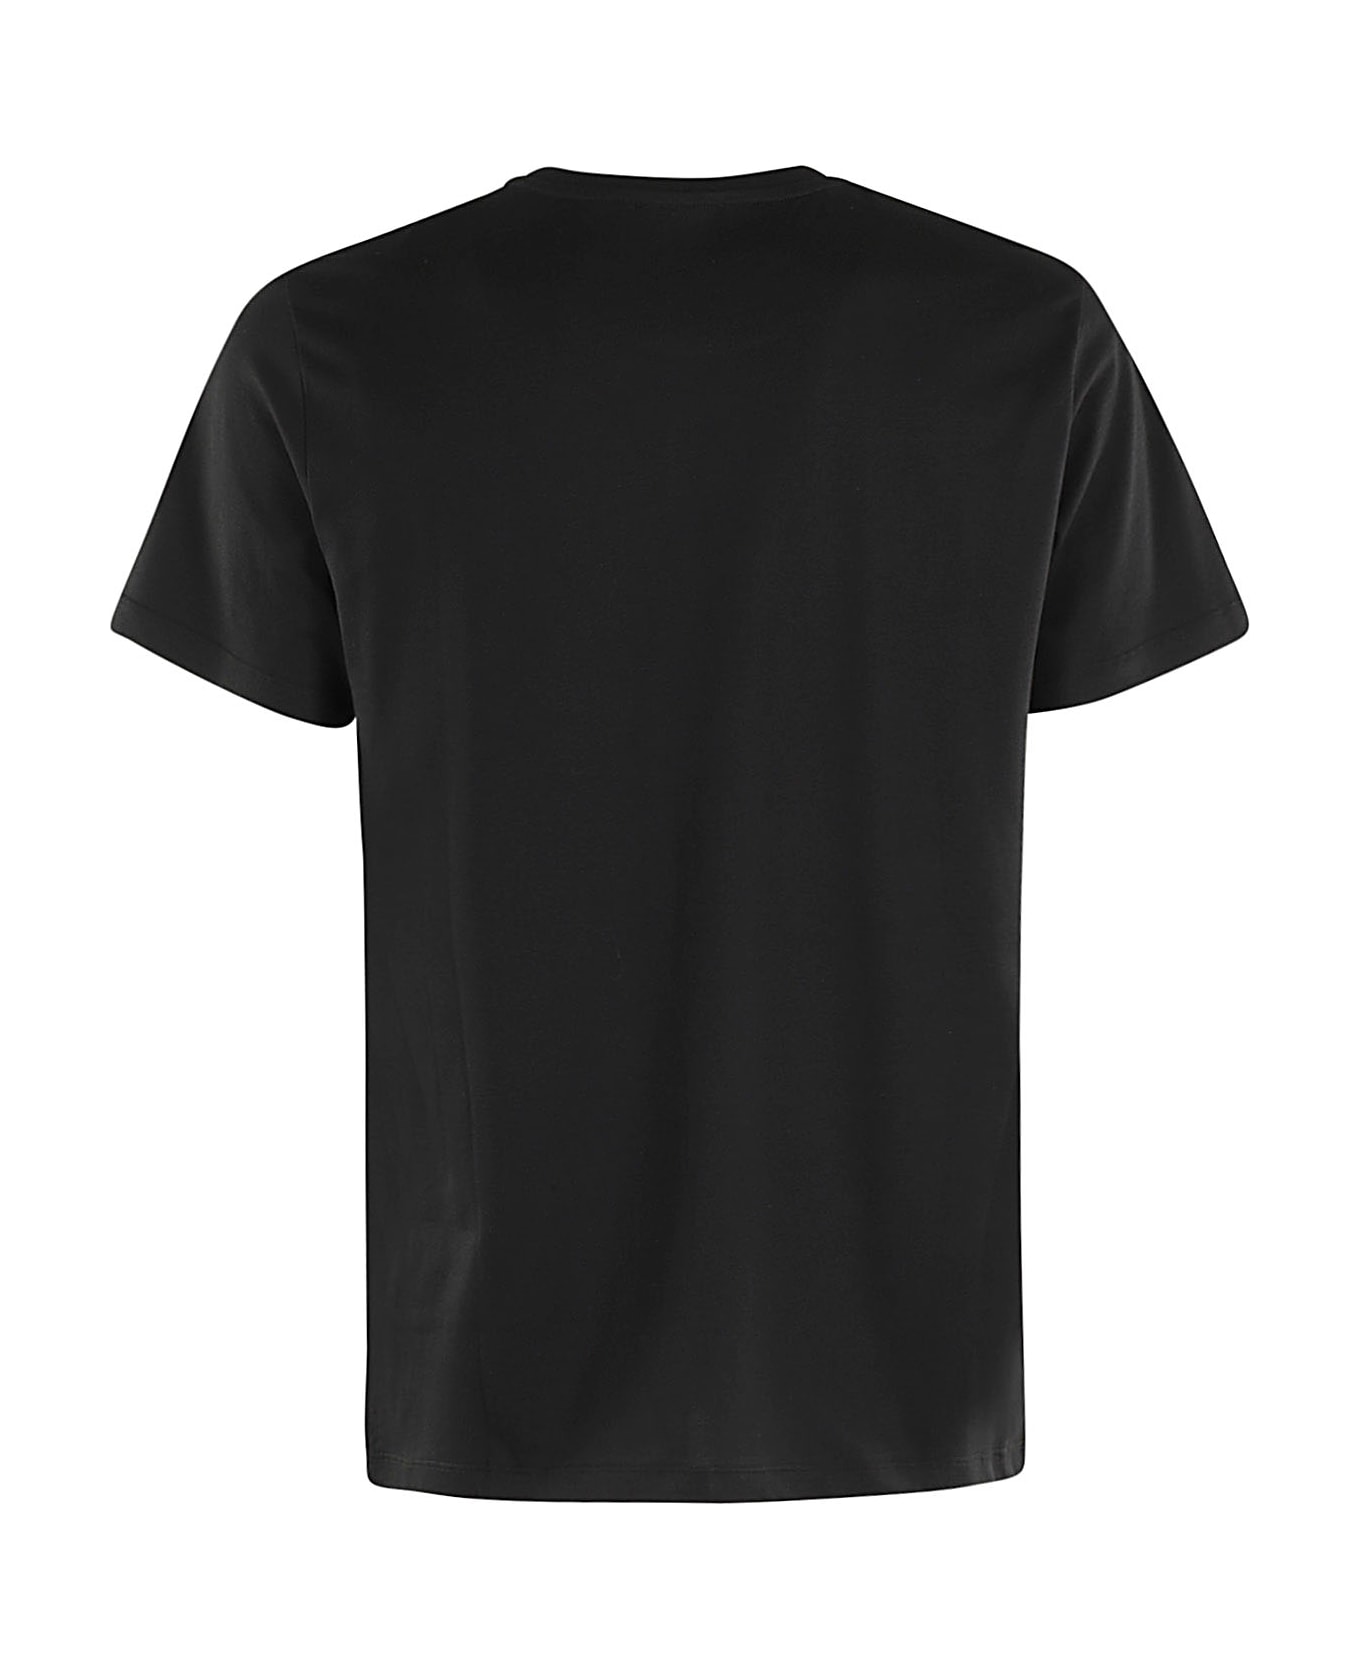 Dondup T Shirt - Nero